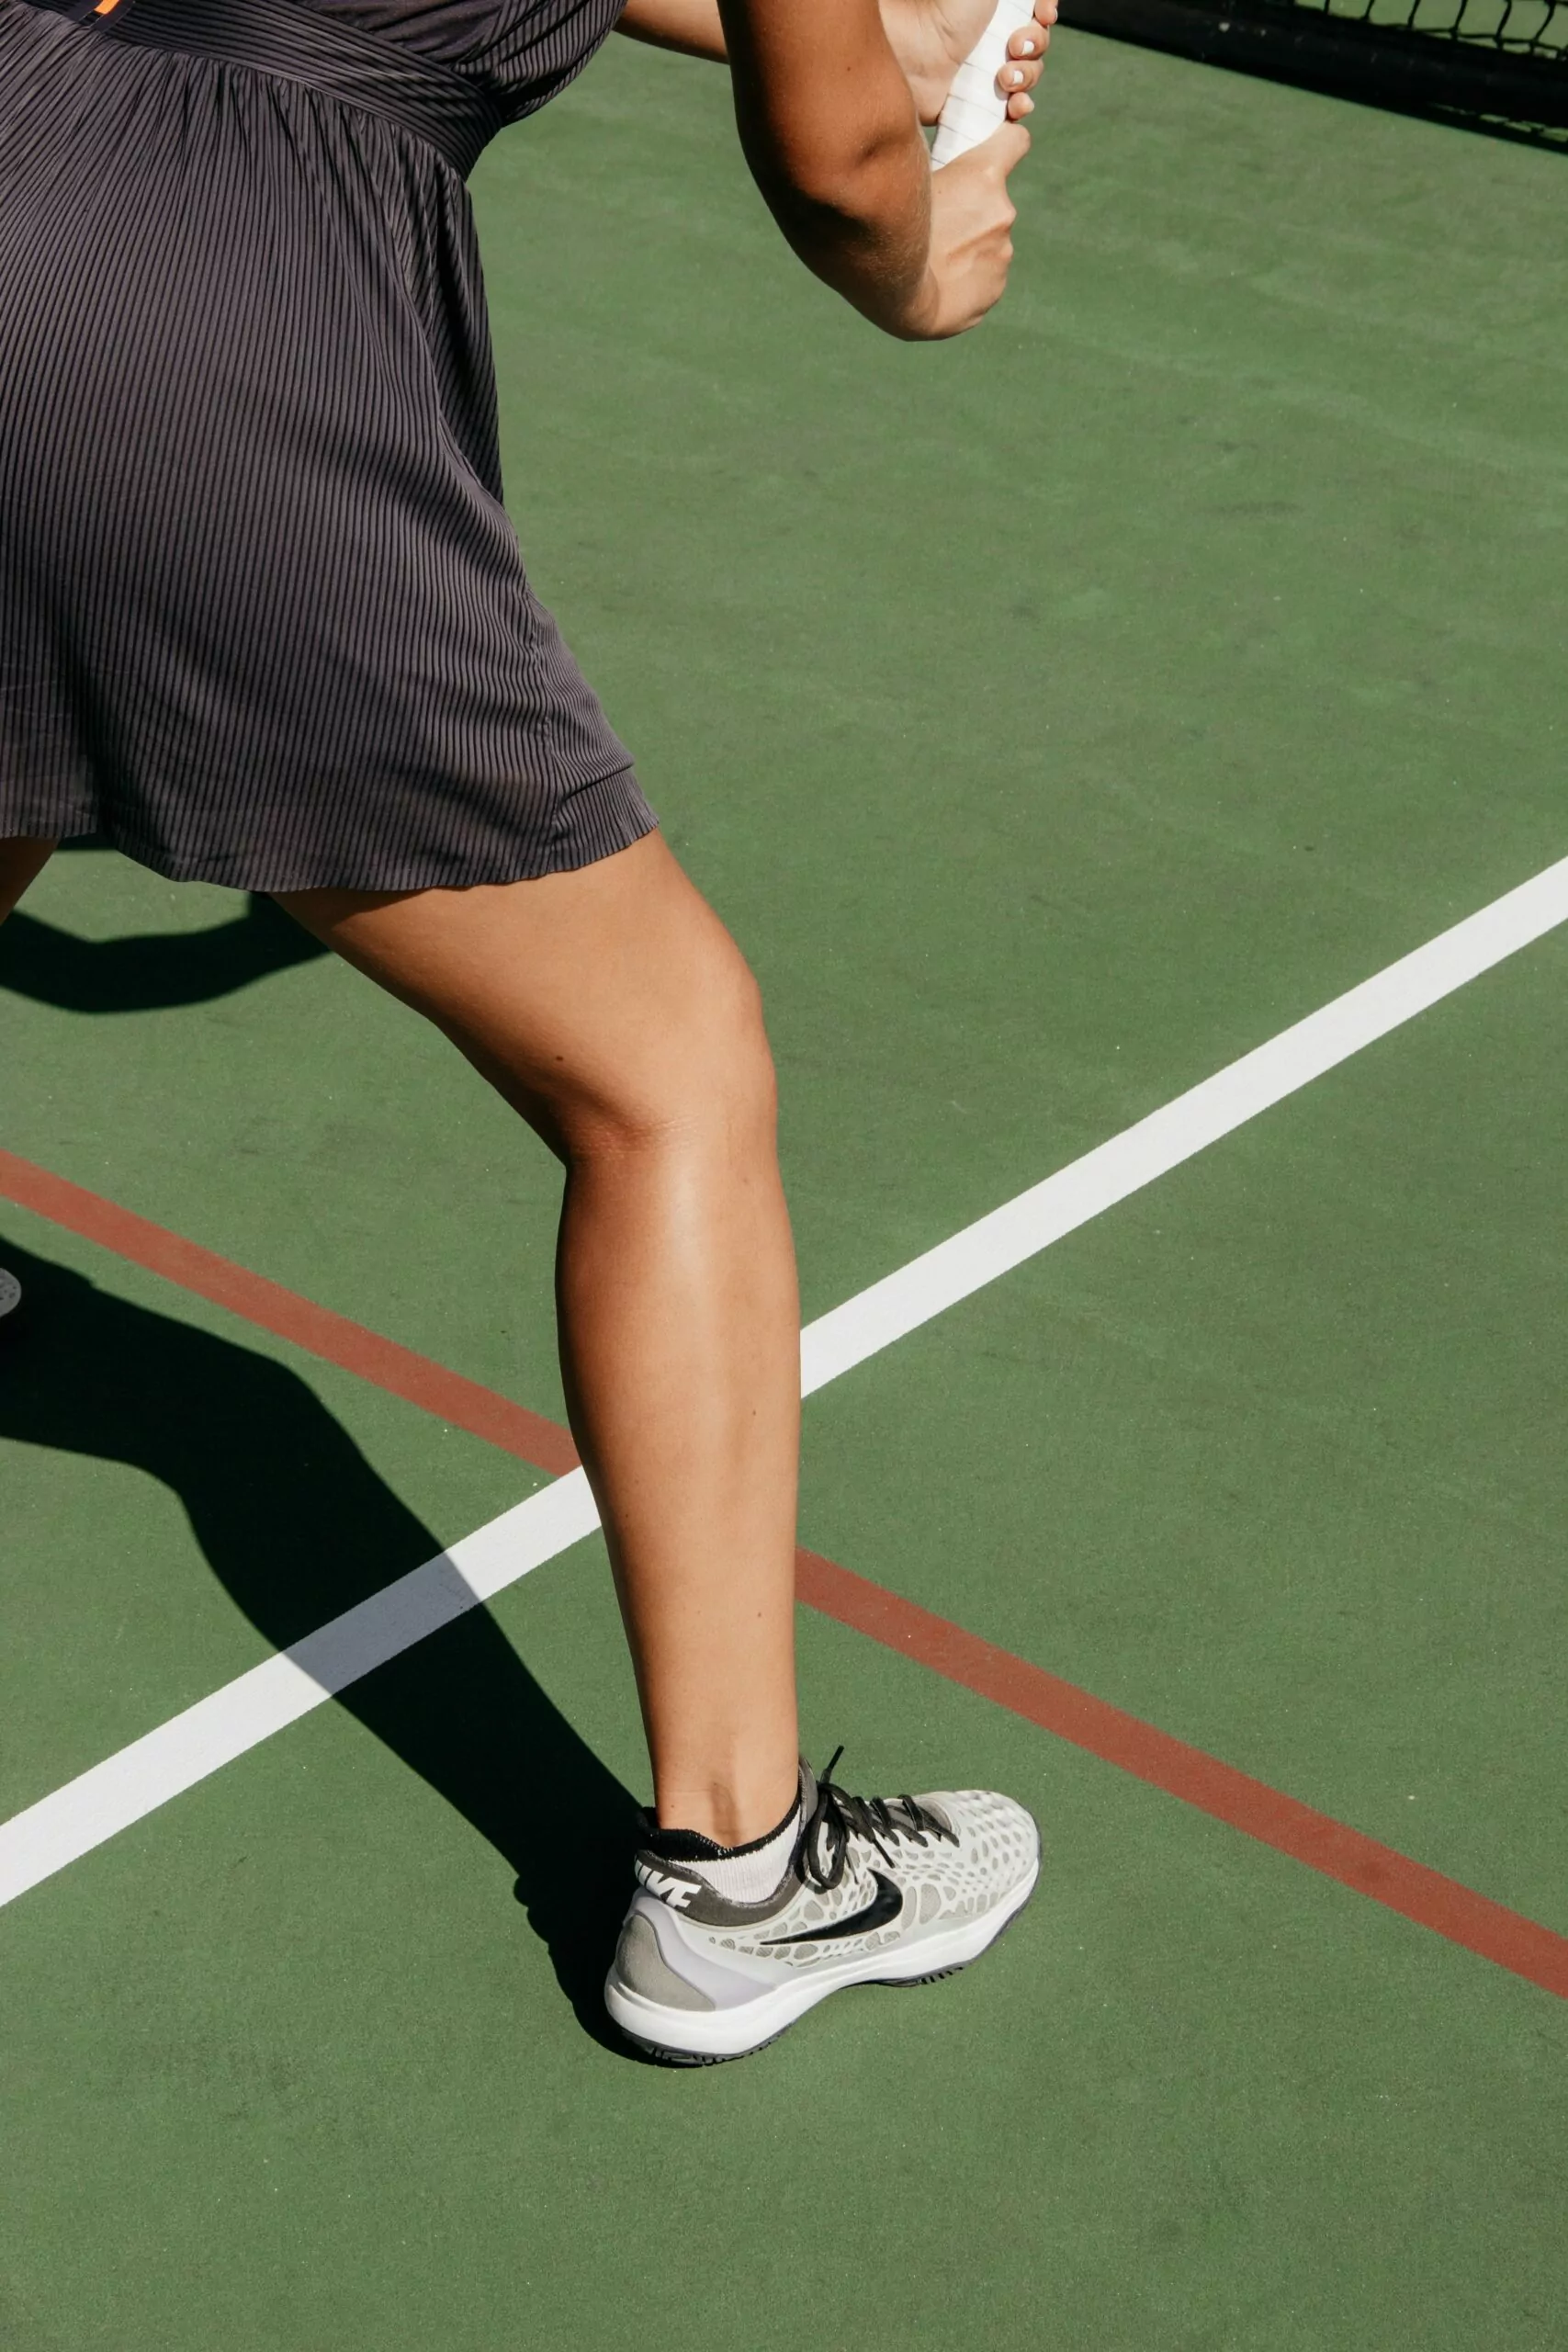 Lady Playing Tennis Leg Shot